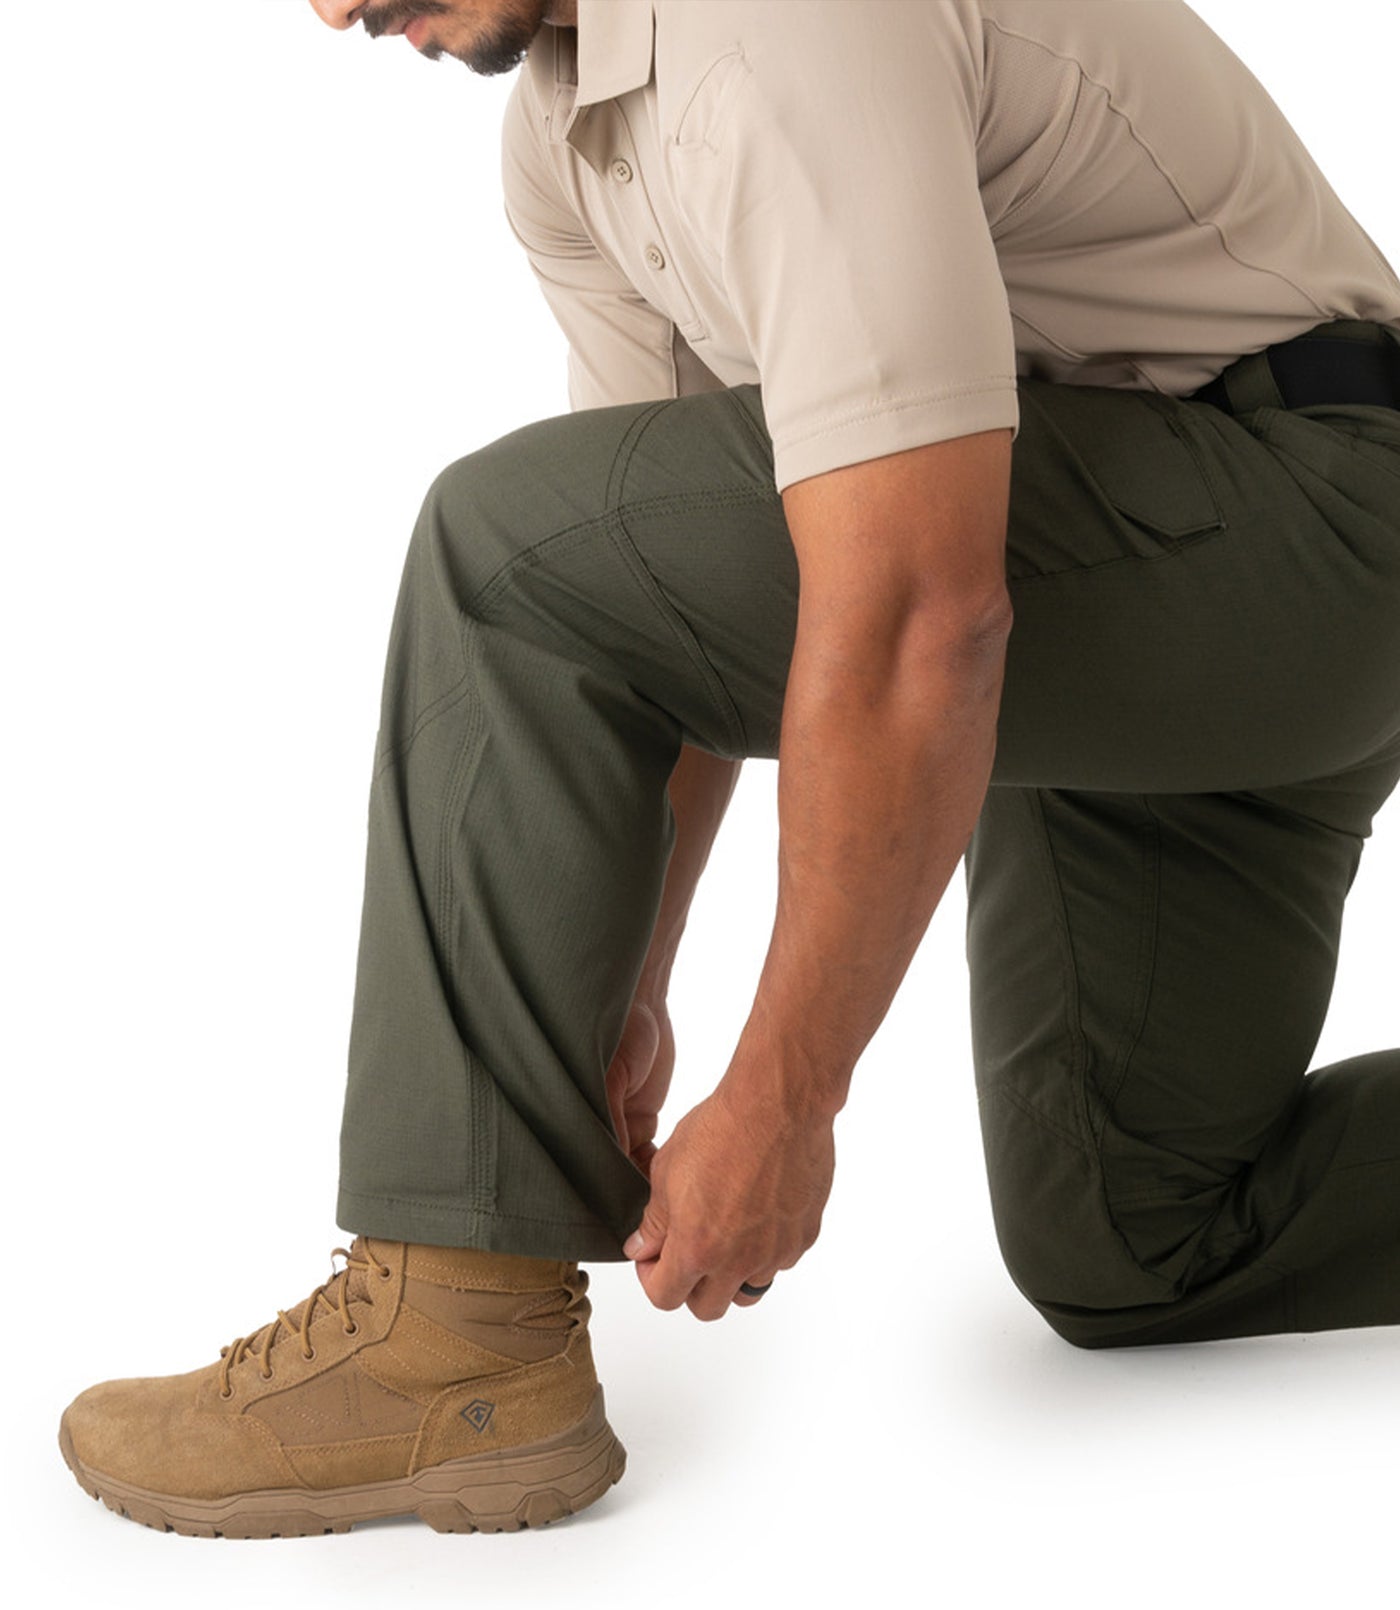 Men's V2 Tactical Pants - OD Green